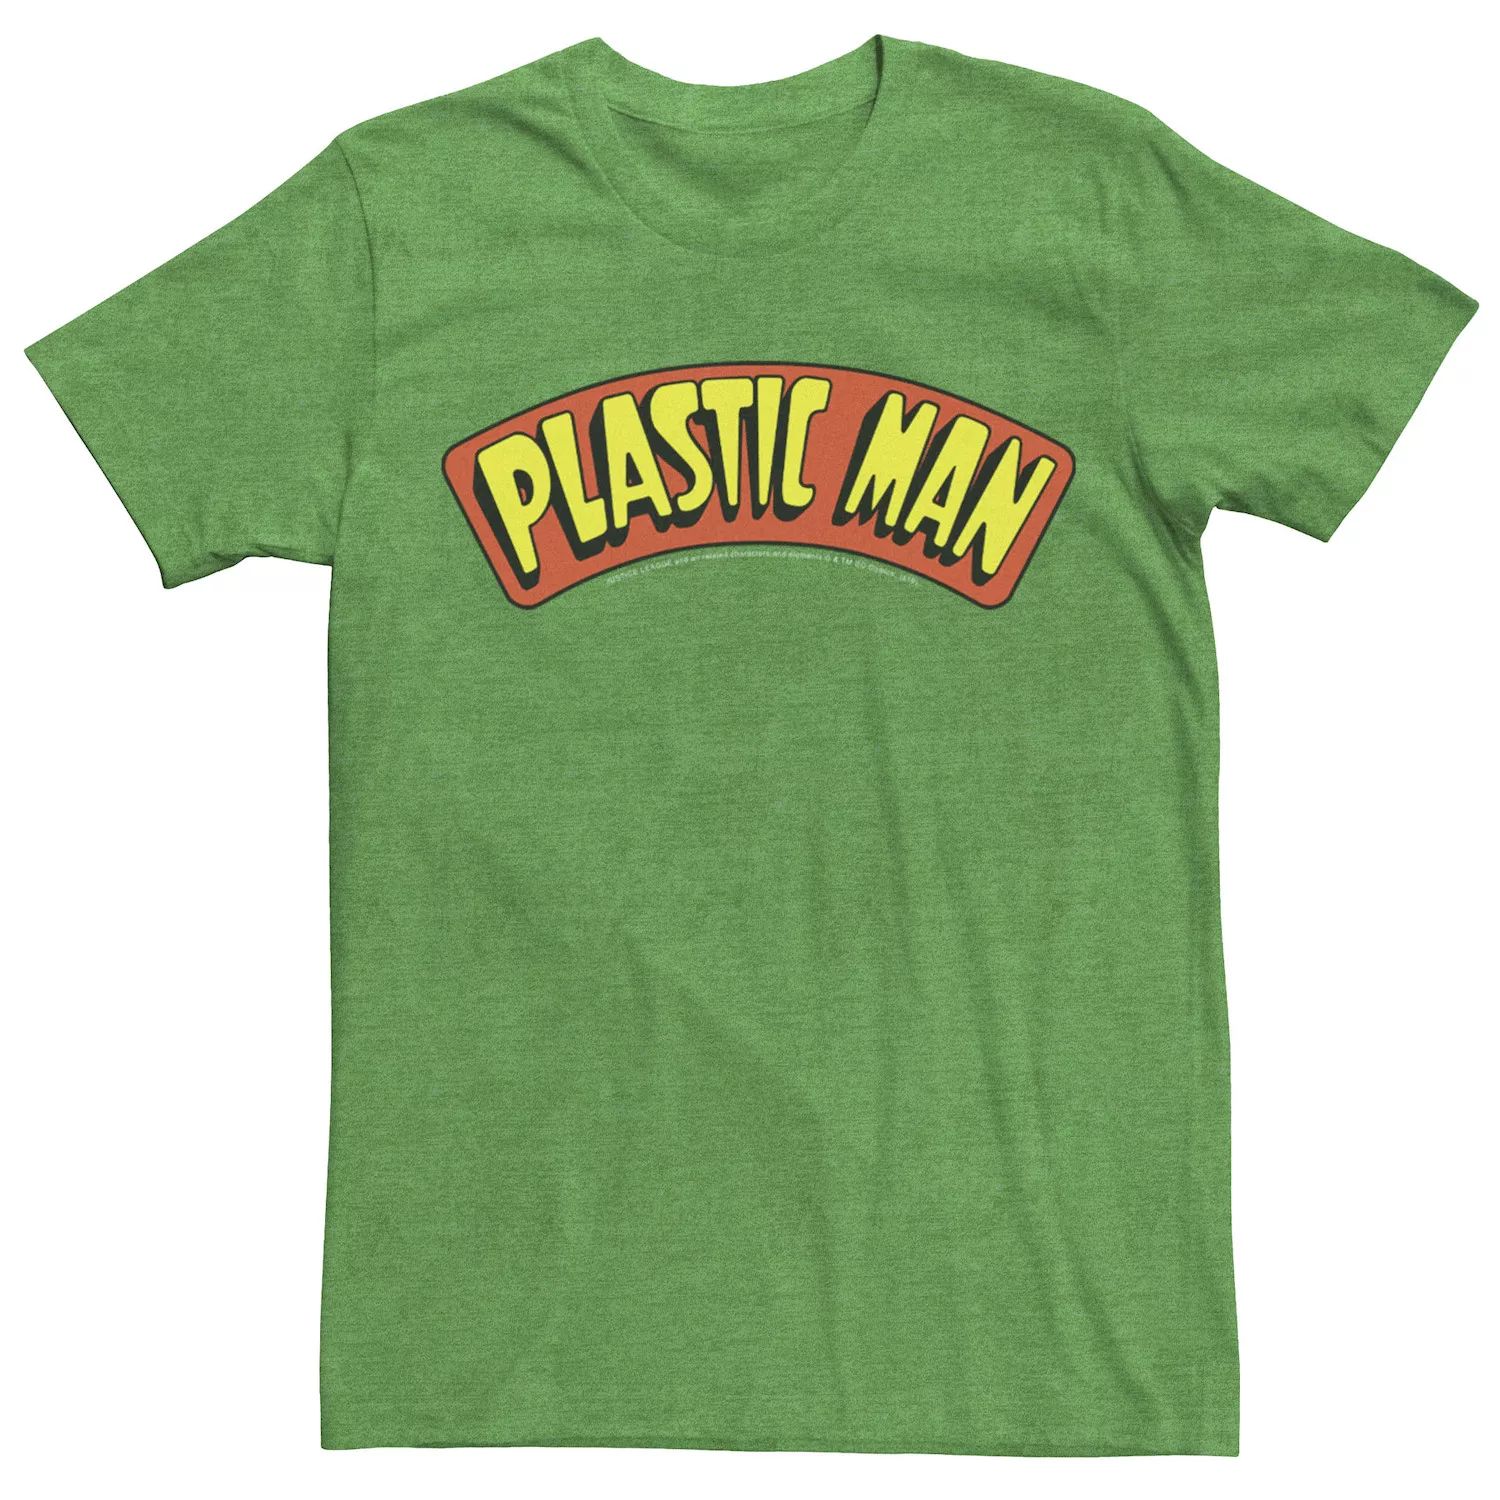 цена Мужская пластиковая футболка с текстовым логотипом и плакатом DC Comics